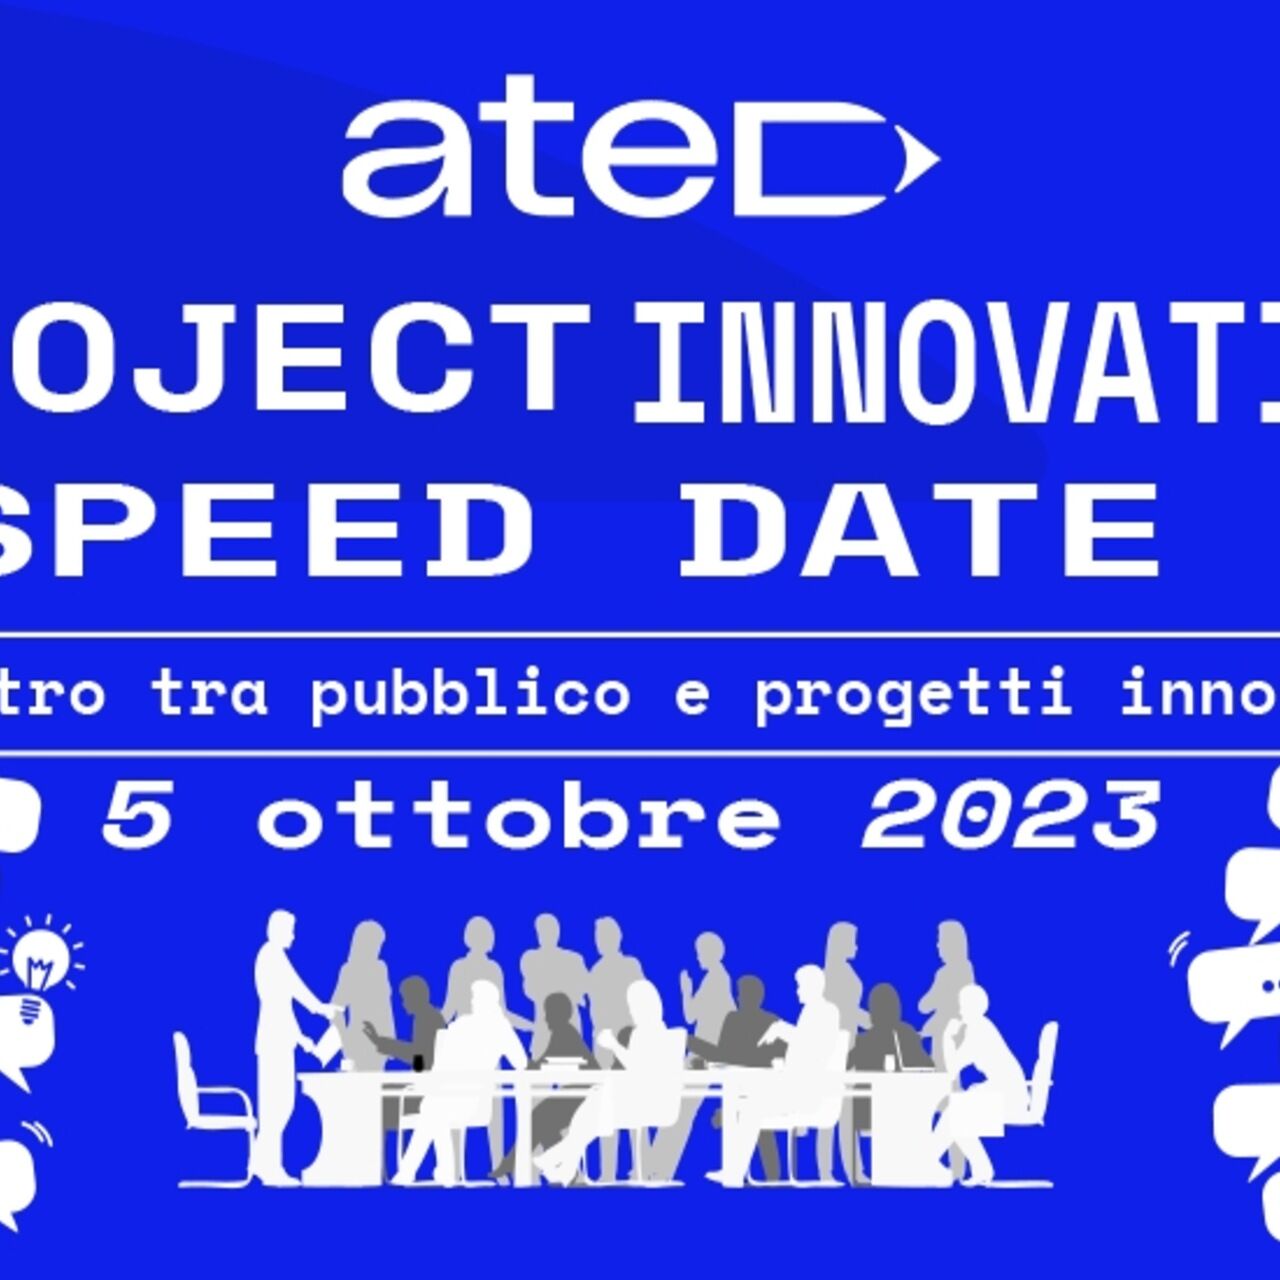 ATED projekto inovacijų greičio data: plakatas ir pagrindinis vaizdas